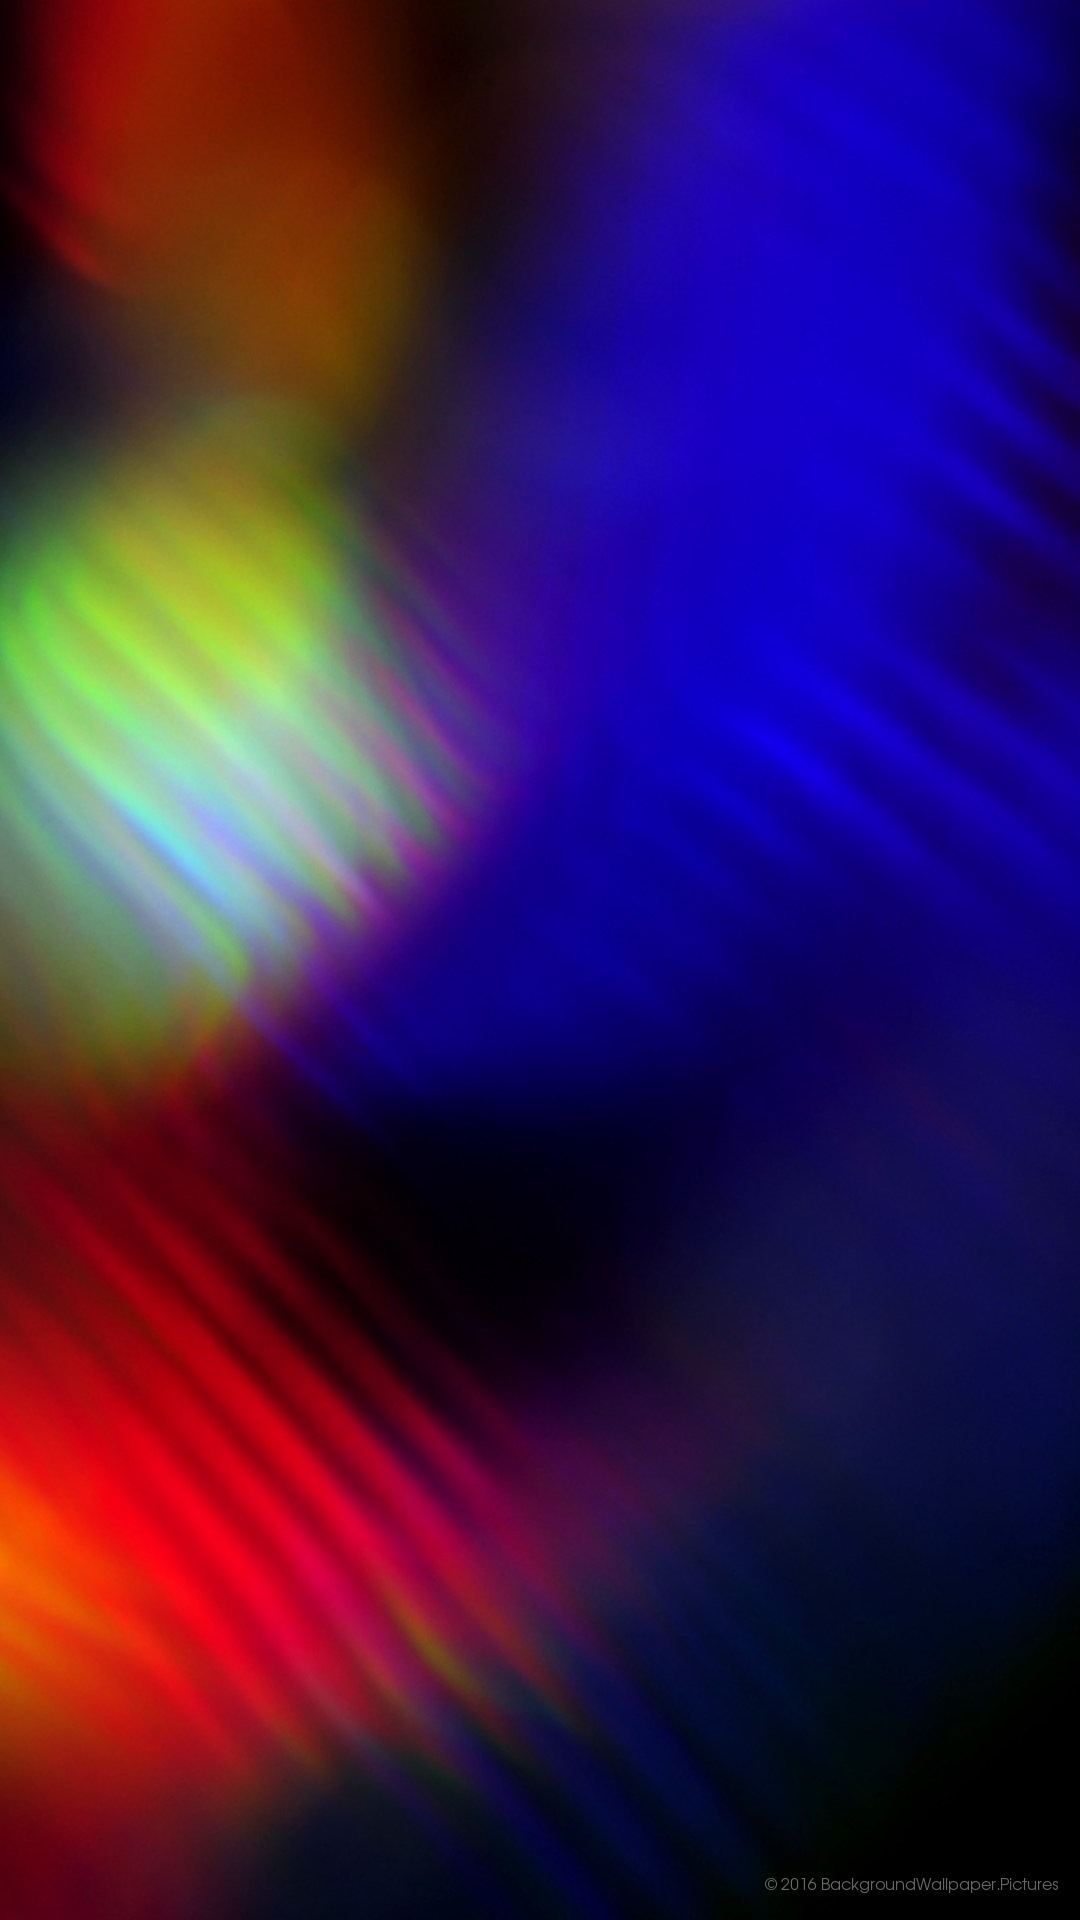 galaxy note 3 fond d'écran hd 1080p,bleu,violet,lumière,violet,couleur